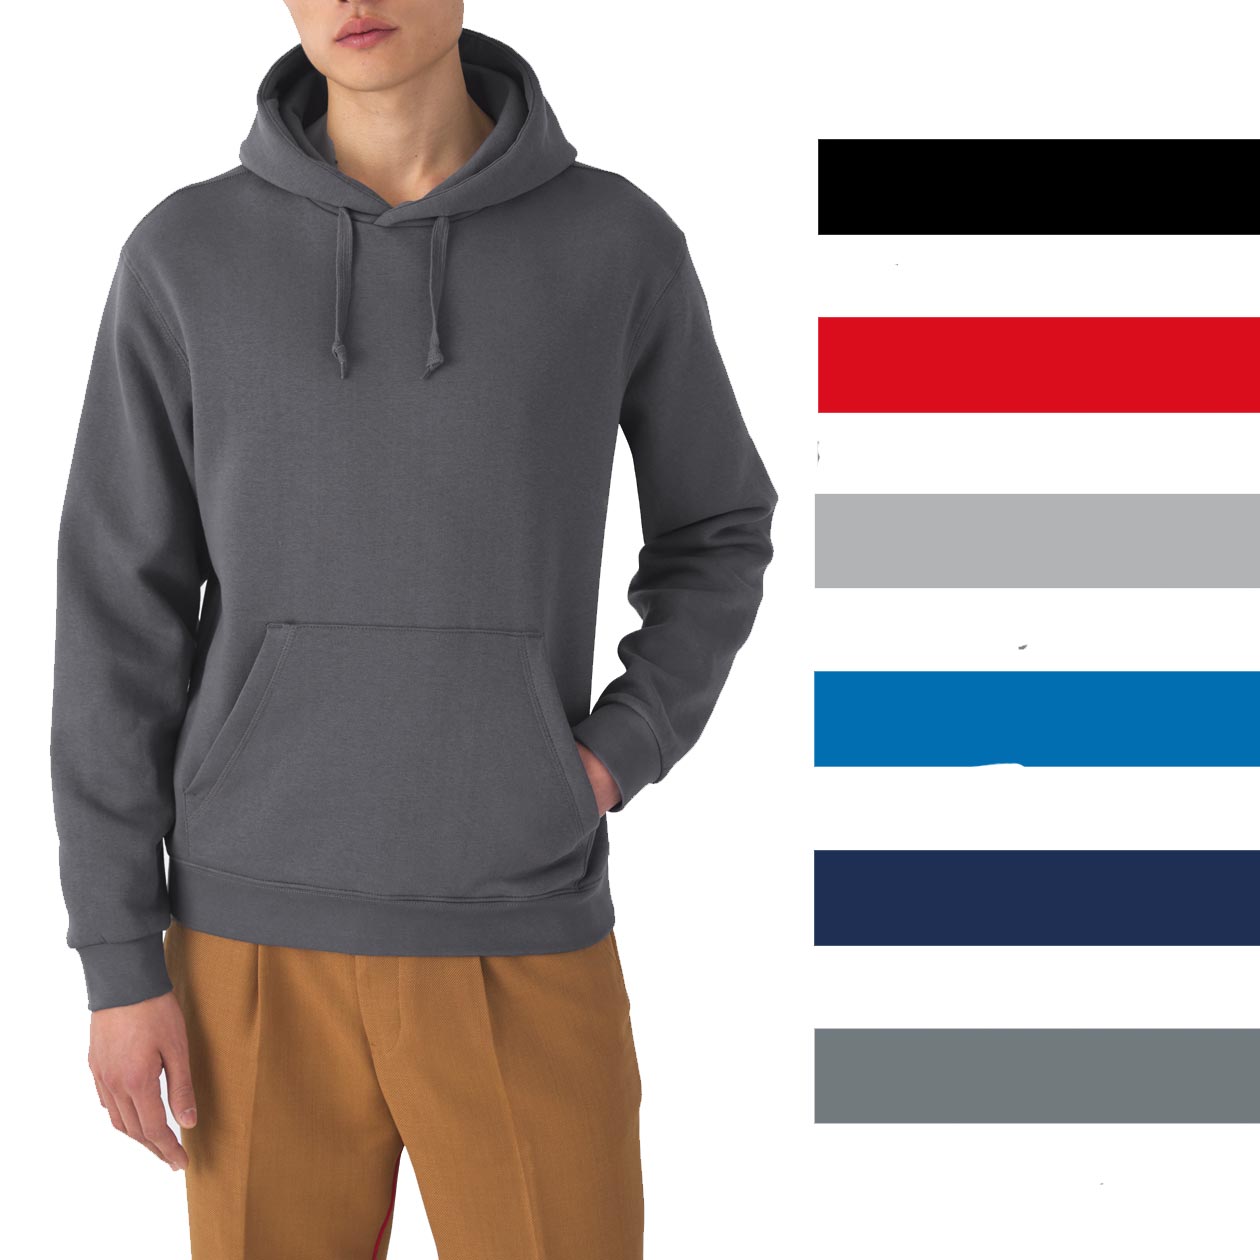 100% Baumwolle marine oder steelgray Sweatshirts in Premium Qualität 320g 